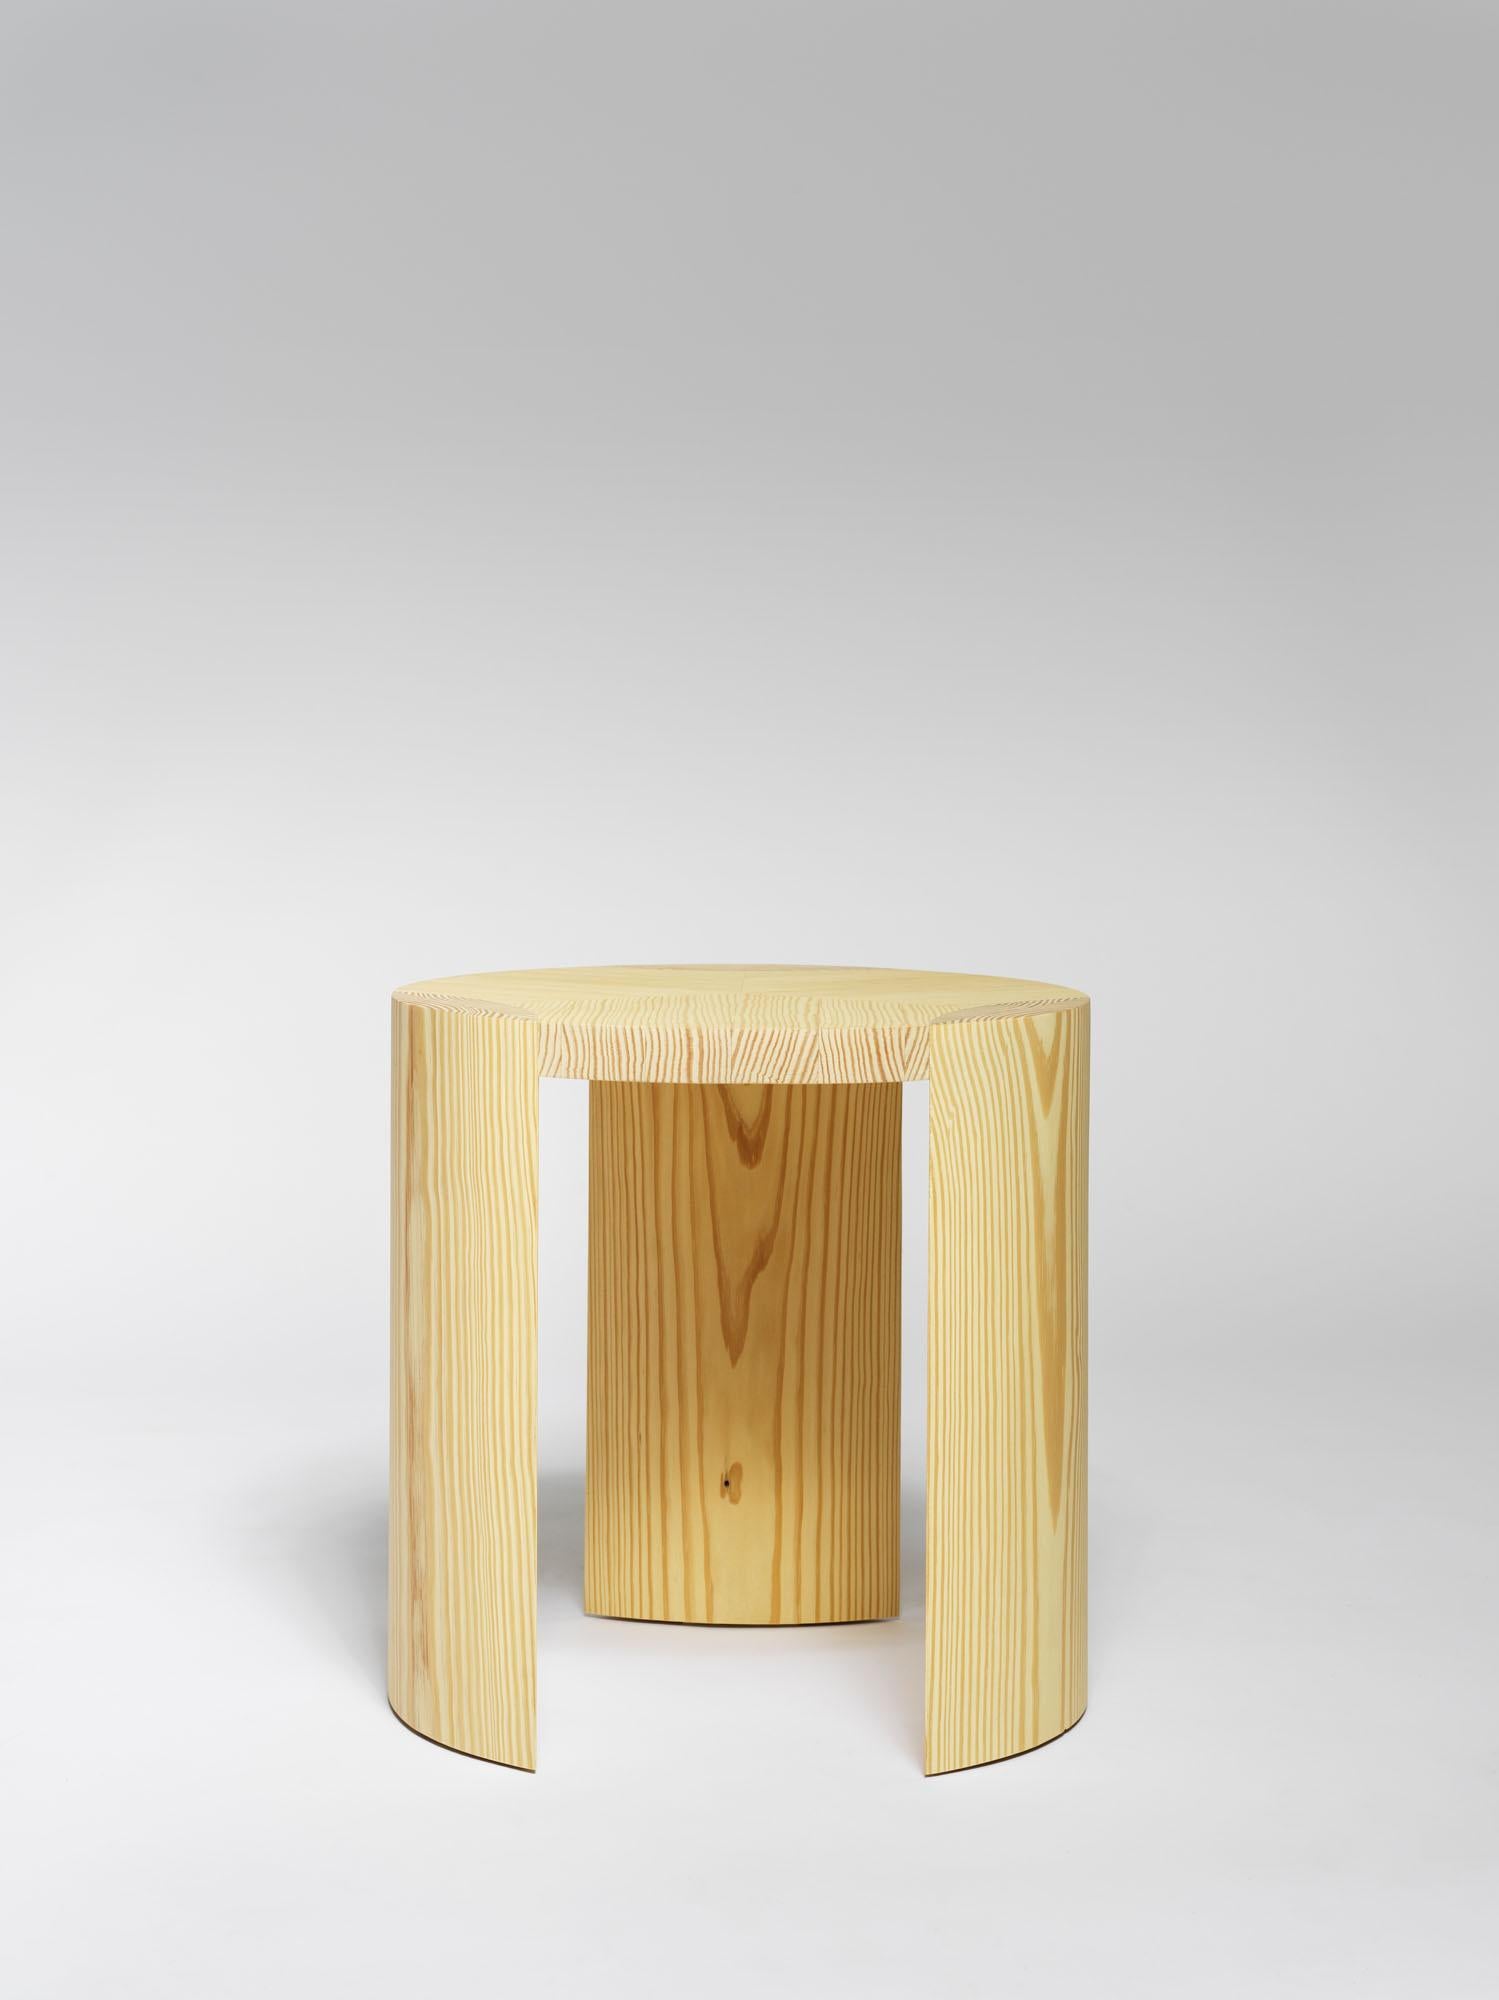 Table basse Nort de Tim Vranken
MATERIAL : Pin jaune
Dimensions : D 60 x H 25 cm

Tim Vranken est un designer de meubles belge qui se concentre sur les meubles solides et faits à la main. Dans ses créations, l'utilisation de matériaux purs et de